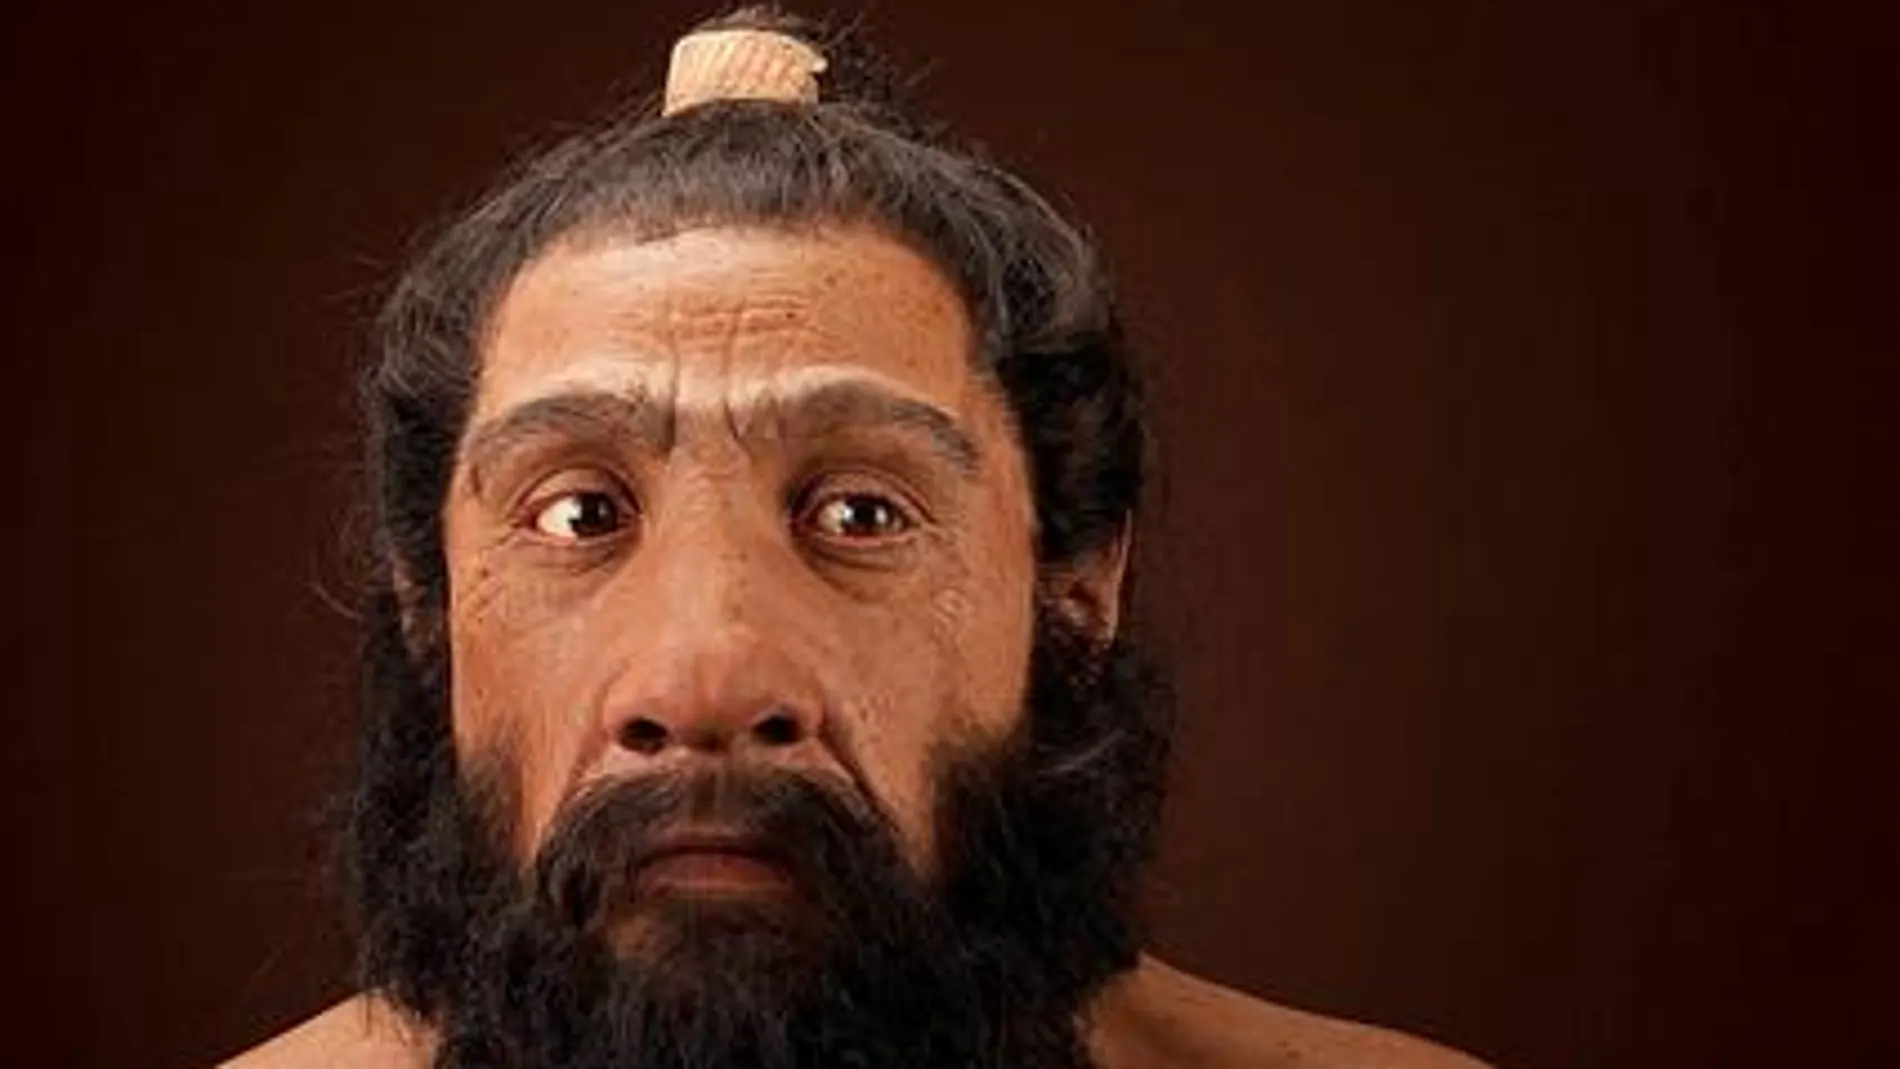 Reconstrucción de un neandertal macho adulto basado en los restos encontrados en Shanidar 1. Una obra de John Gurche